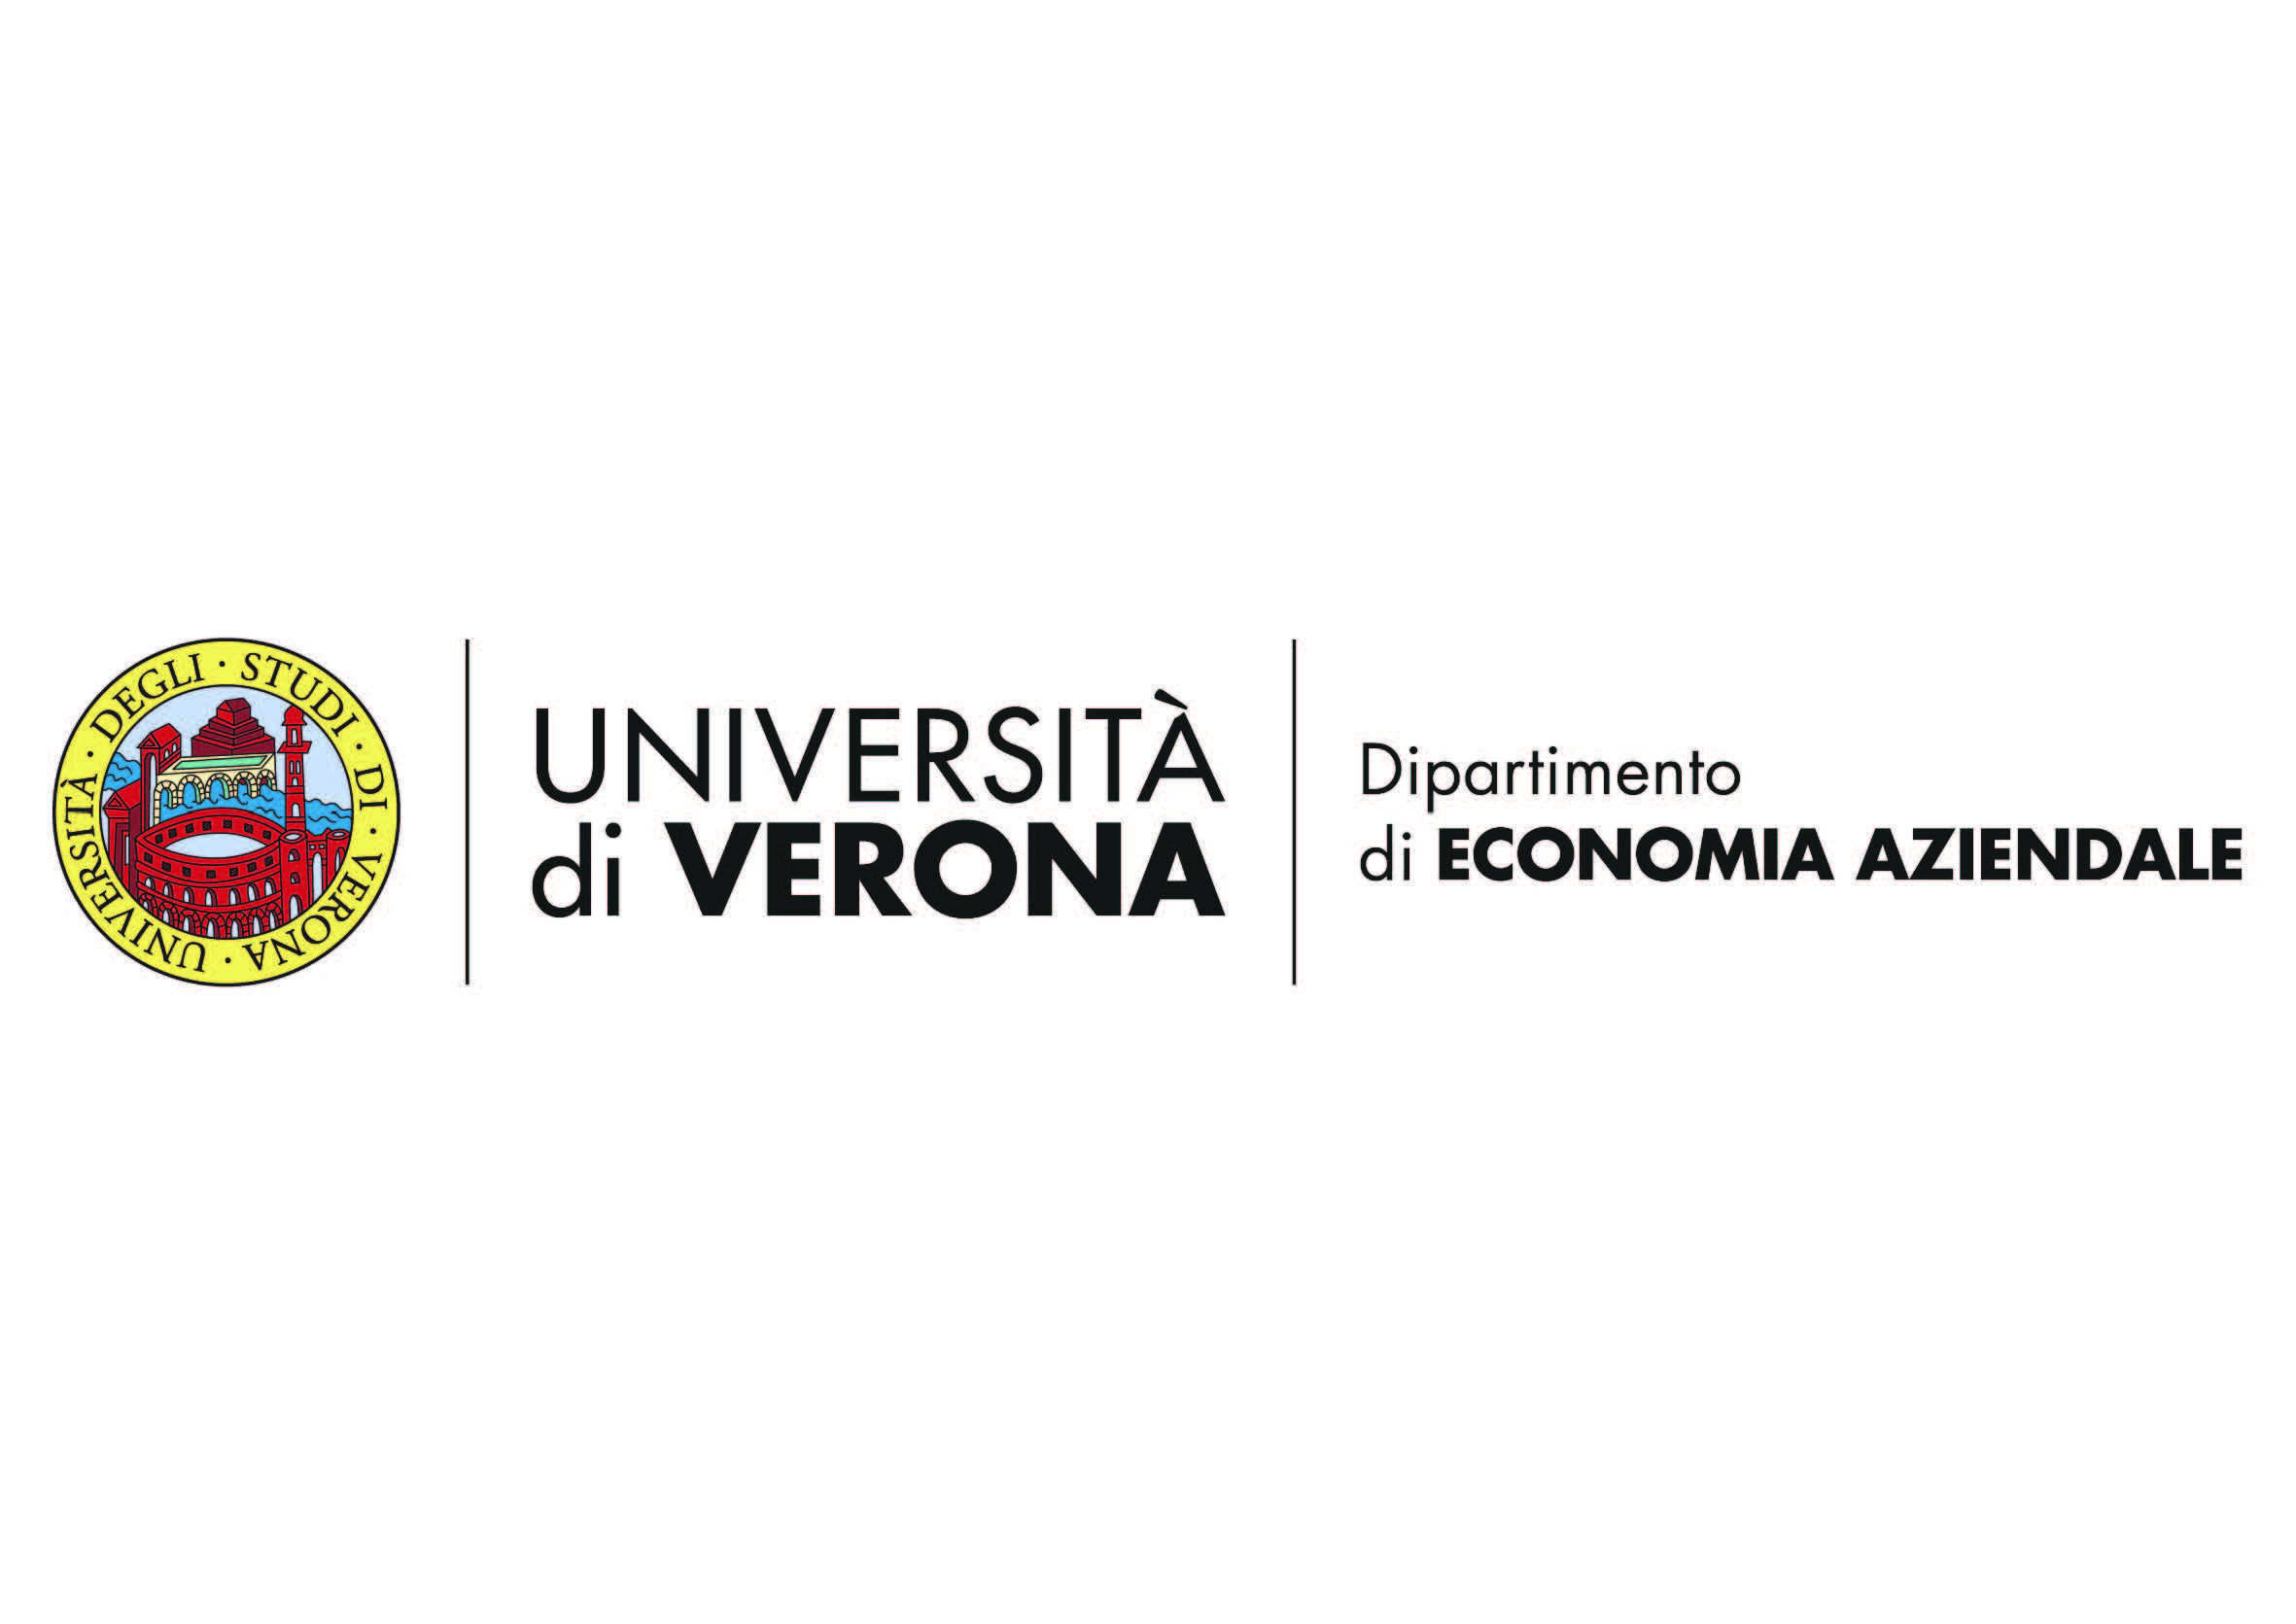 Università degli Studi di Verona